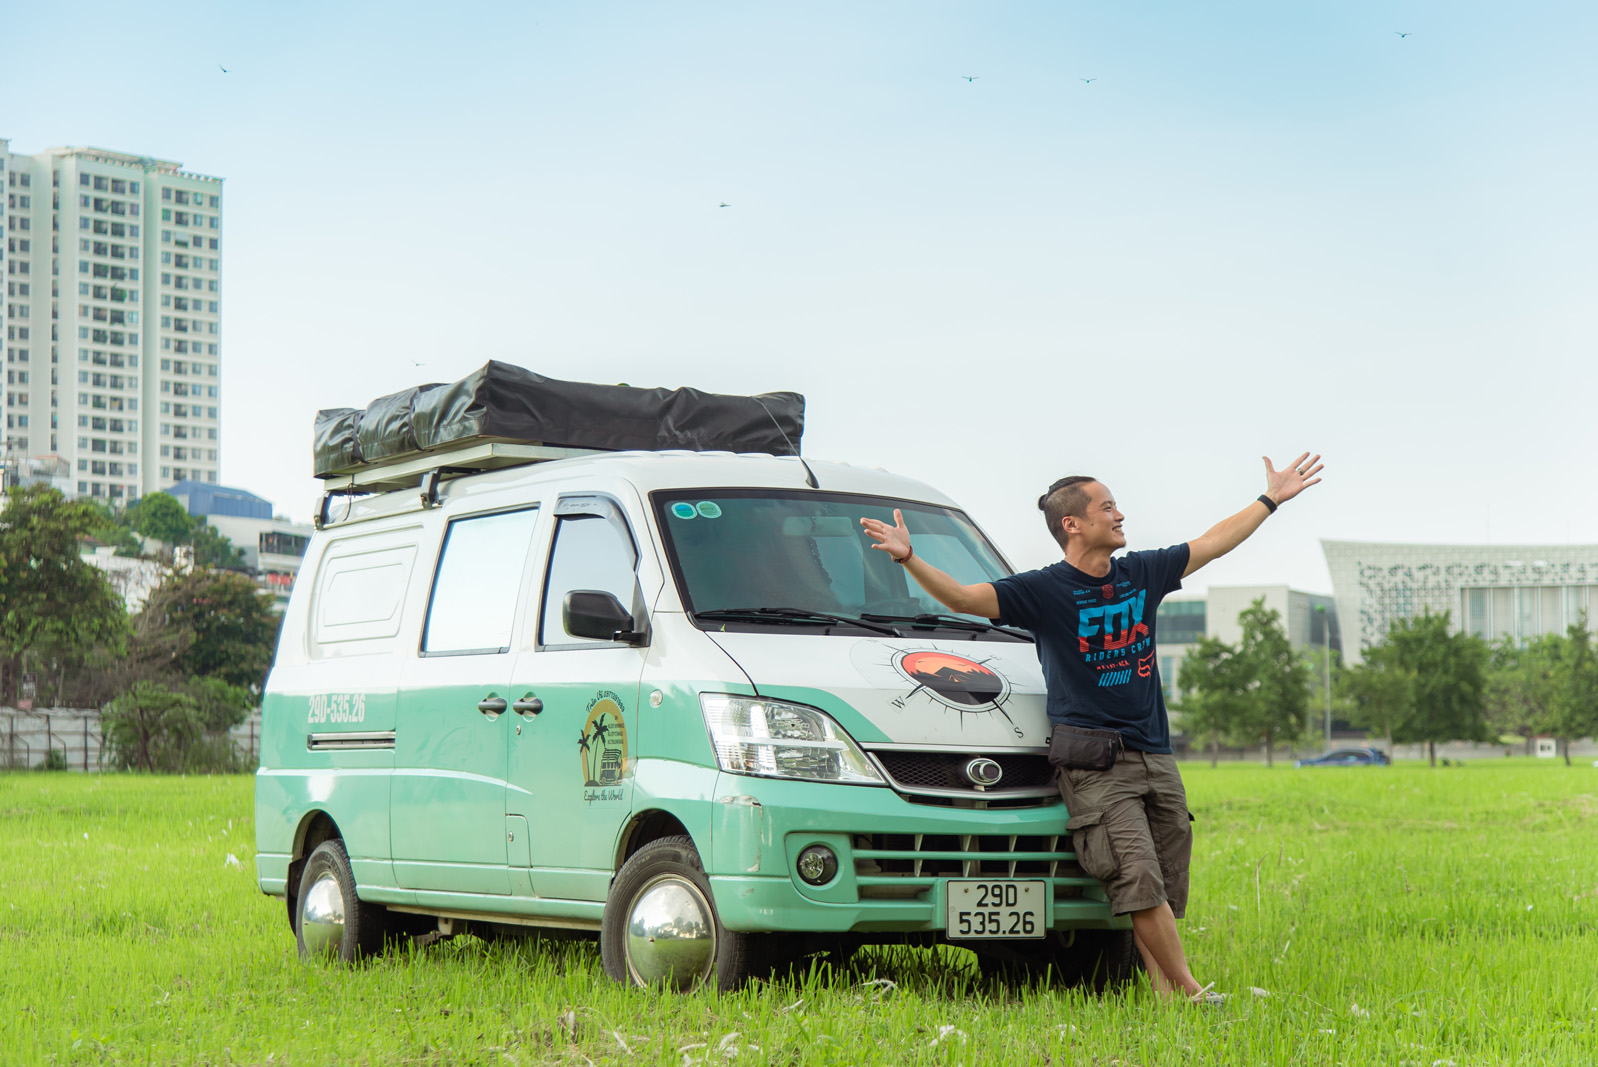 Bán Triton mua xe van THACO hơn 300 triệu độ camping chạy Bắc Nam hơn 18.000km, chủ xe trải lòng: 'Vui, tiện nhưng đi xa hơi cực' - Ảnh 12.